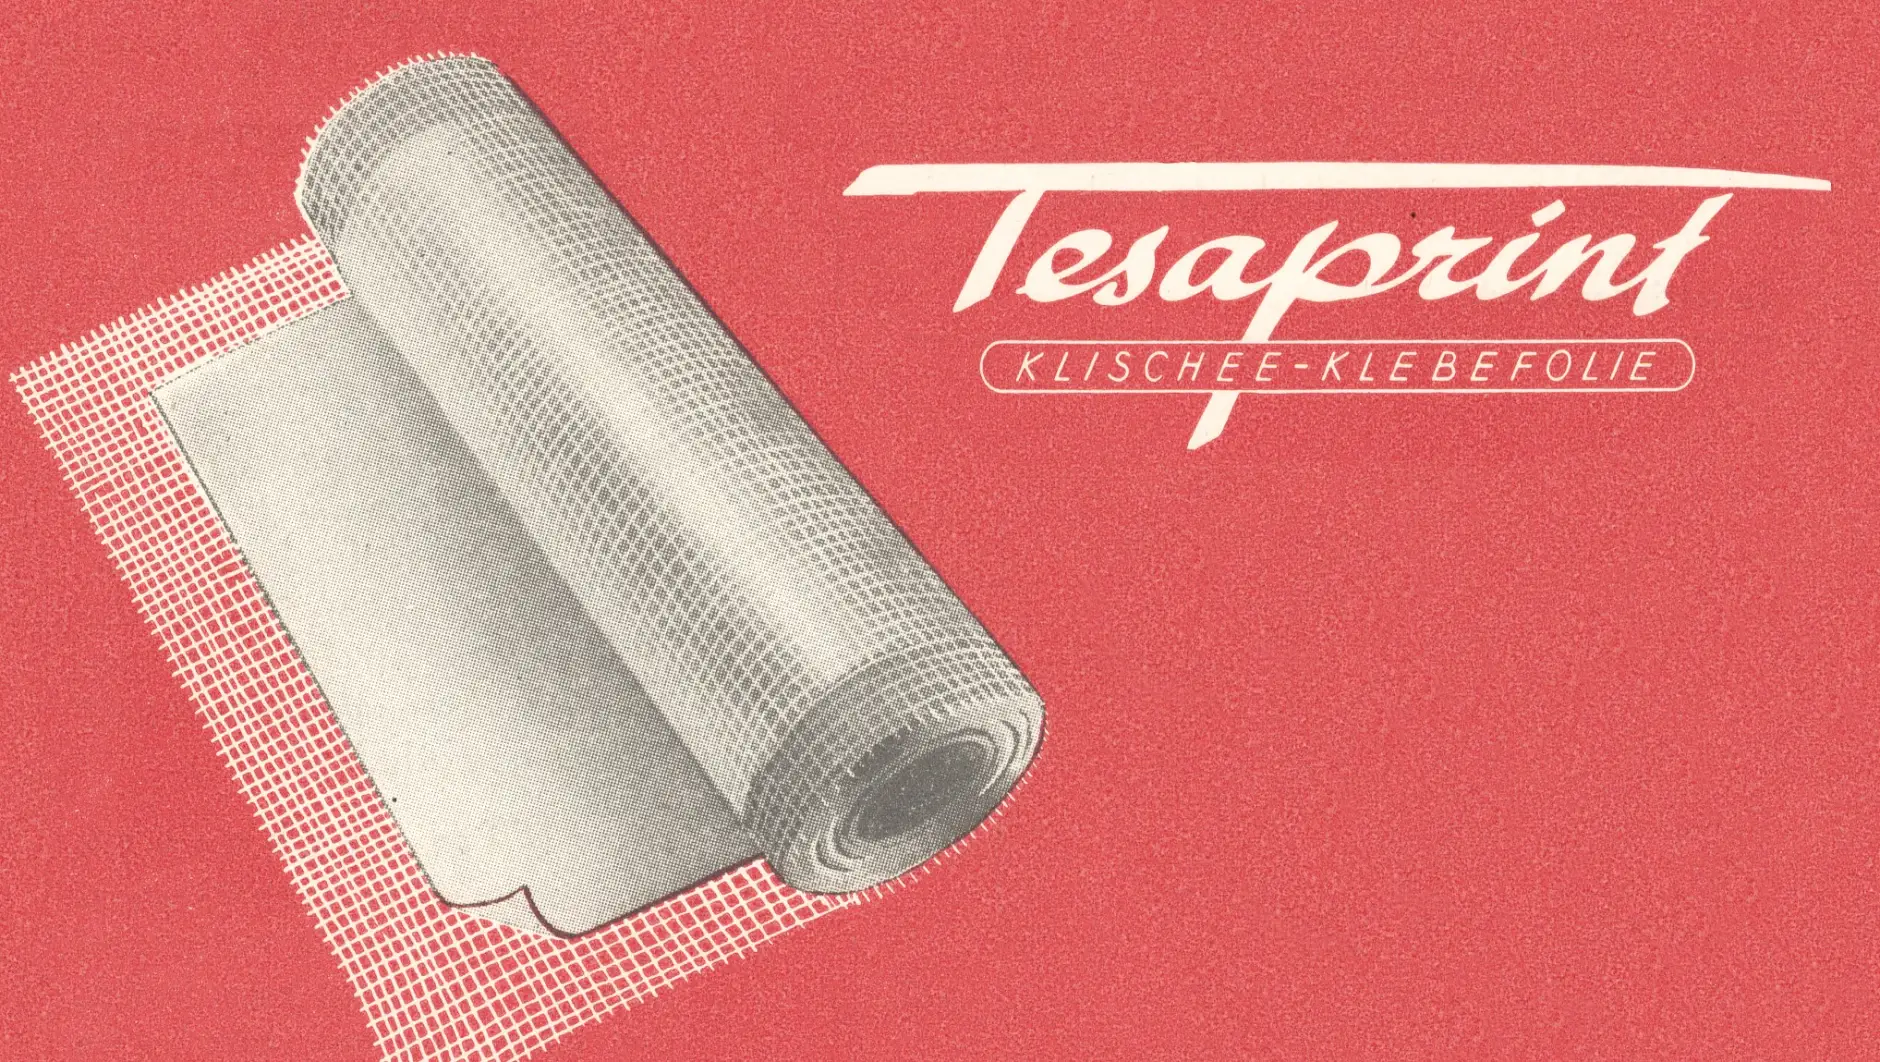 1949年，tesaprint已经被用于印刷业。